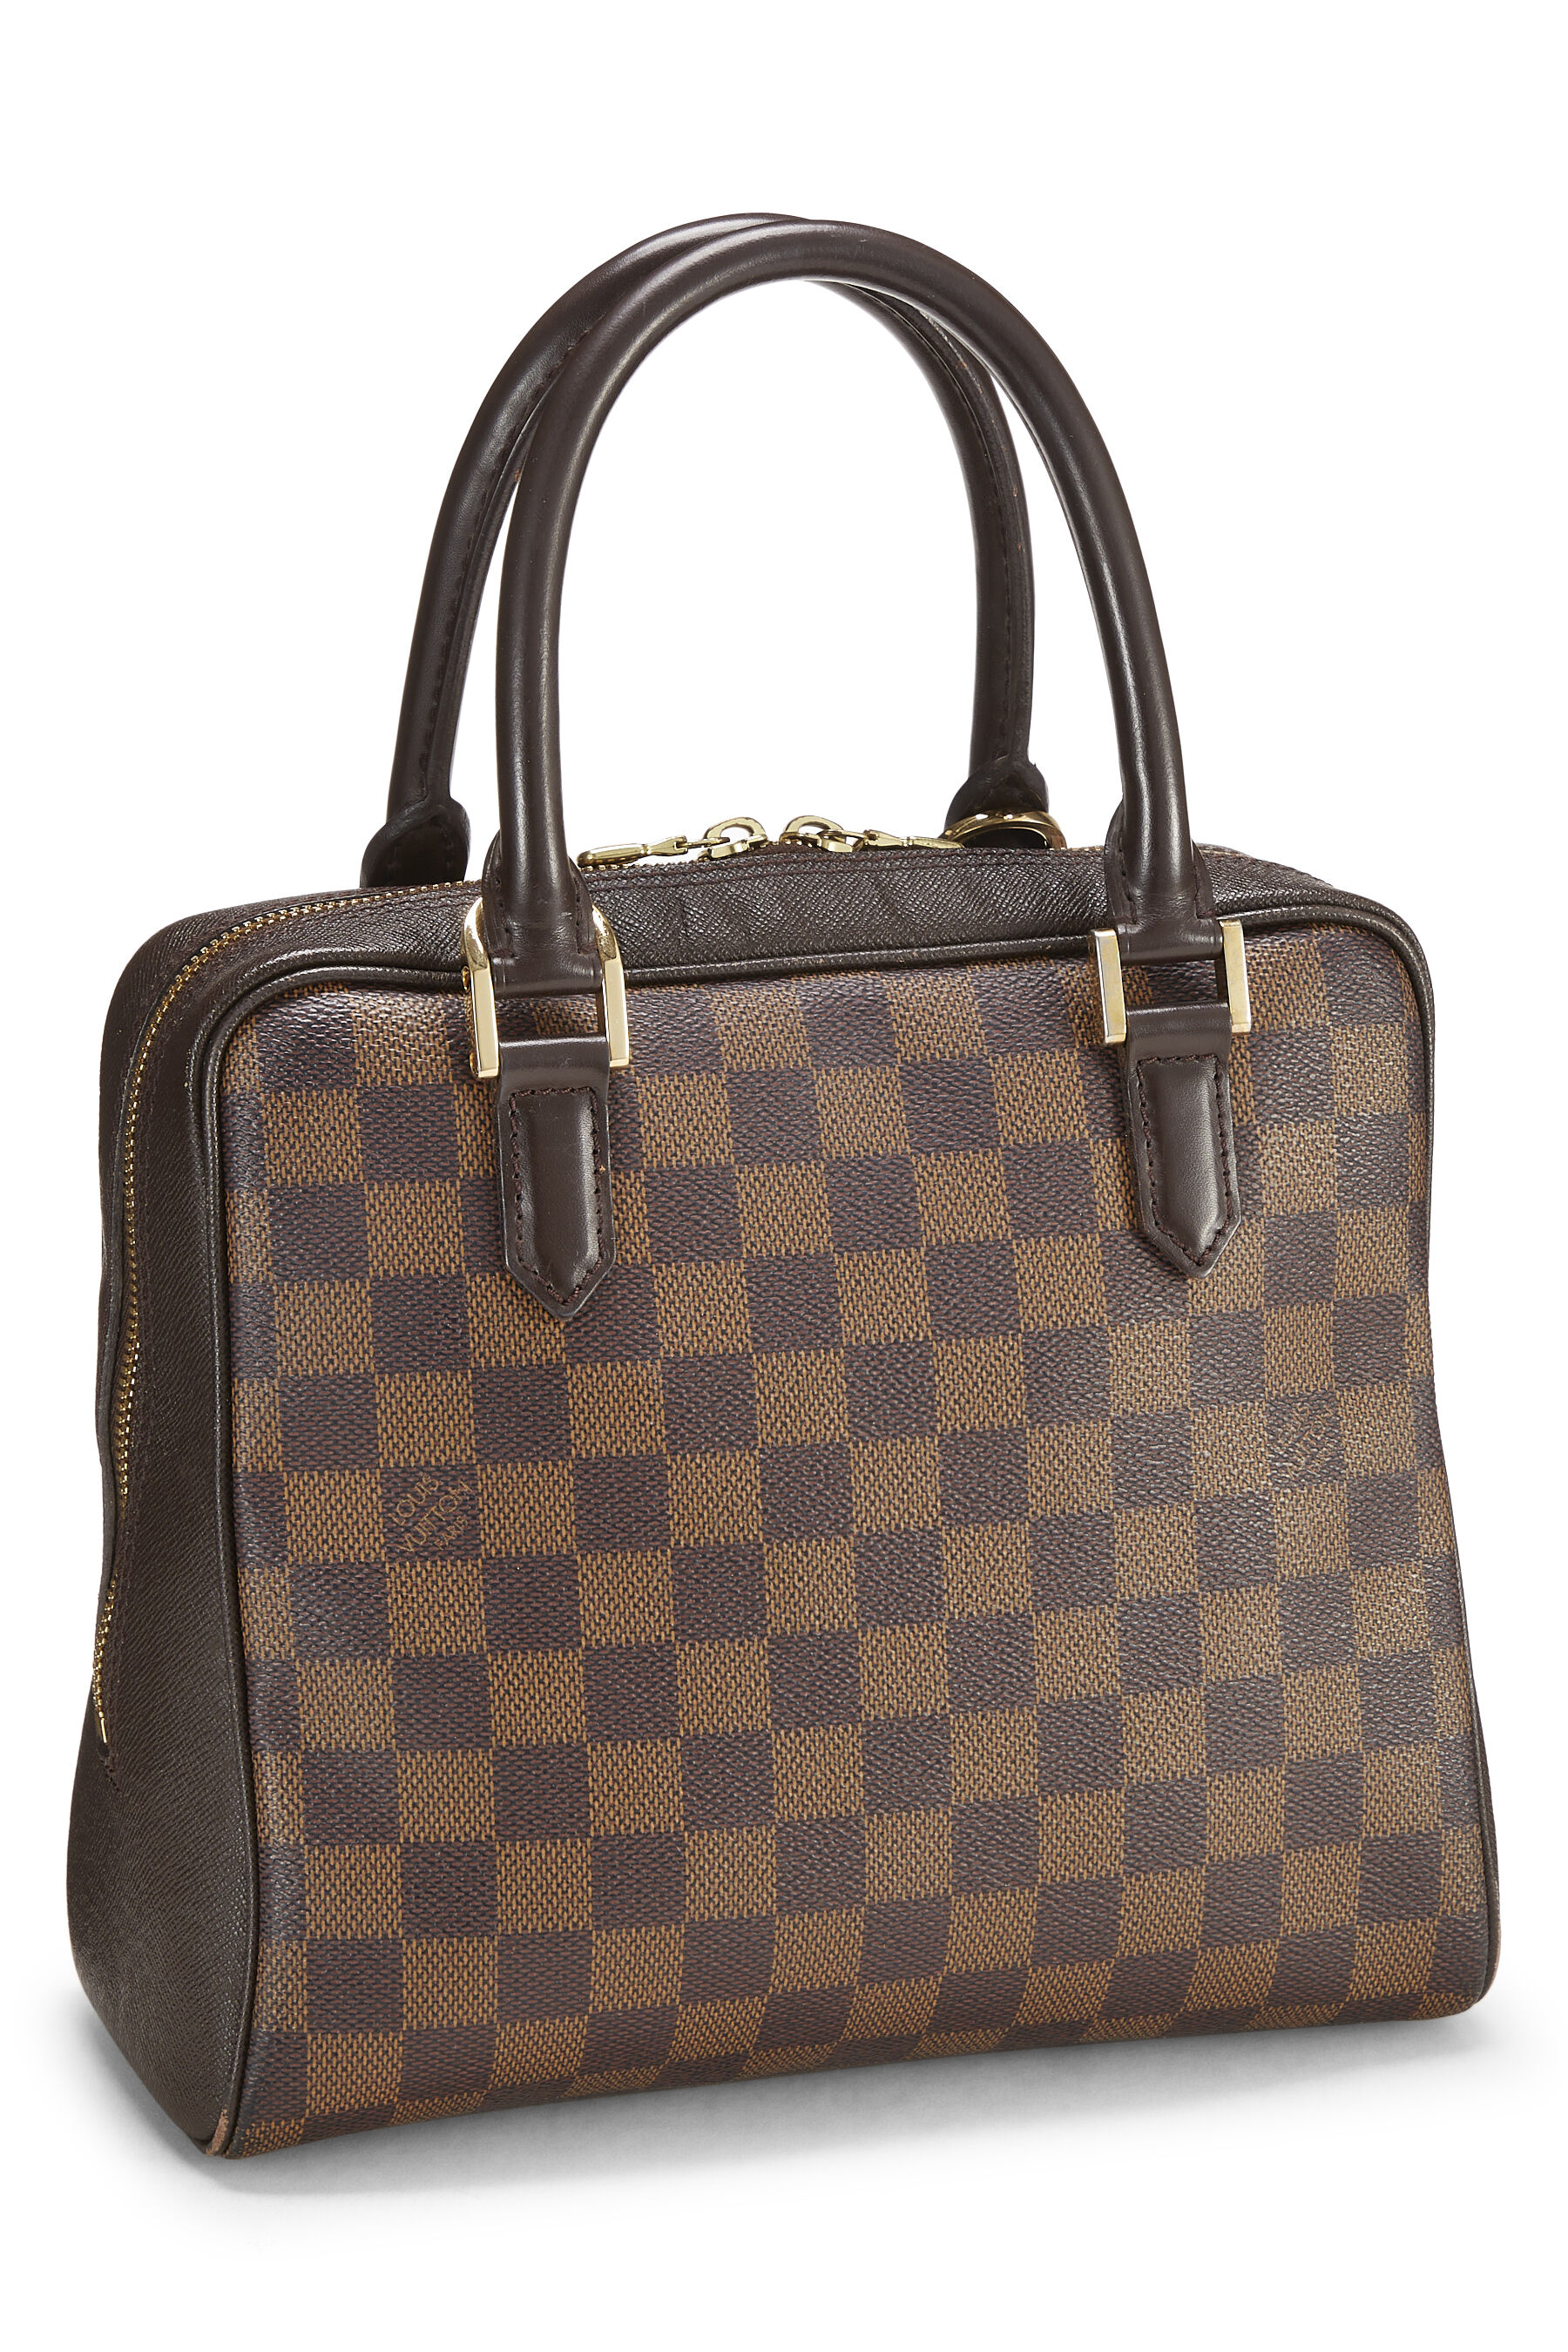 Louis Vuitton, Bags, Authentic Louis Vuitton Brera Damier Ebene